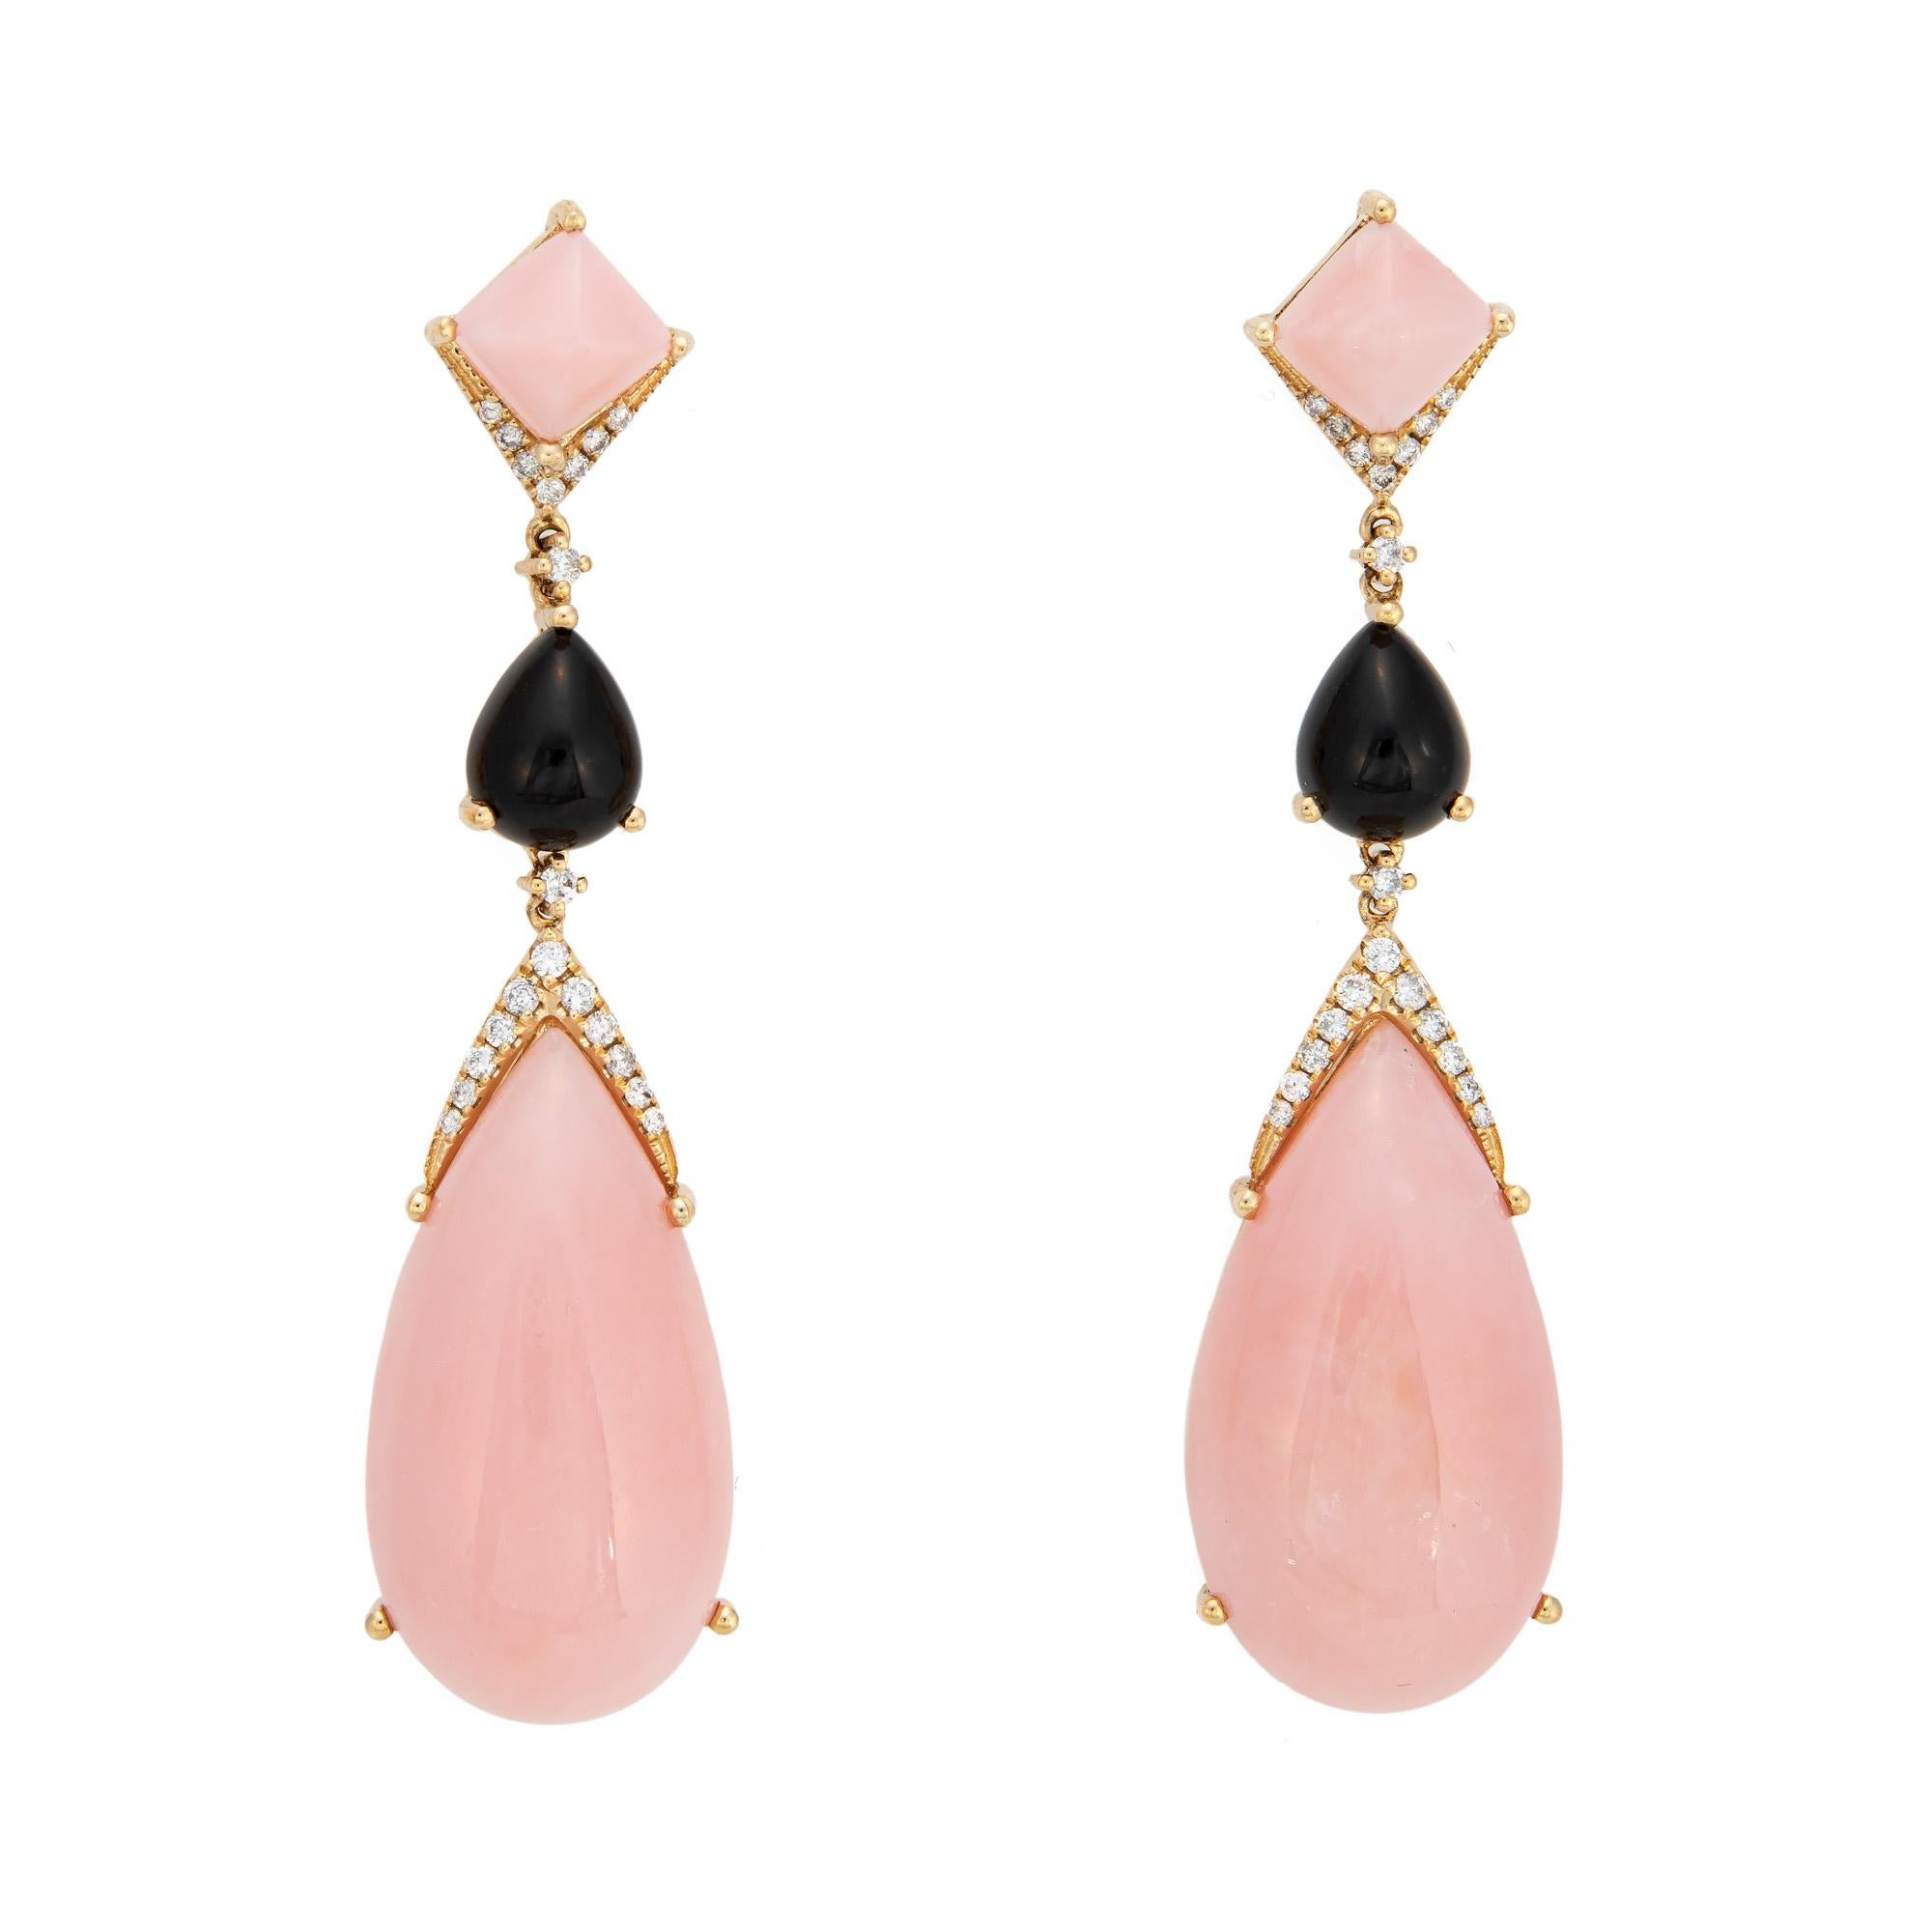 Pear Cut Pink Opal Onyx Diamond Earrings Long Drops 14k Yellow Gold Estate Jewelry